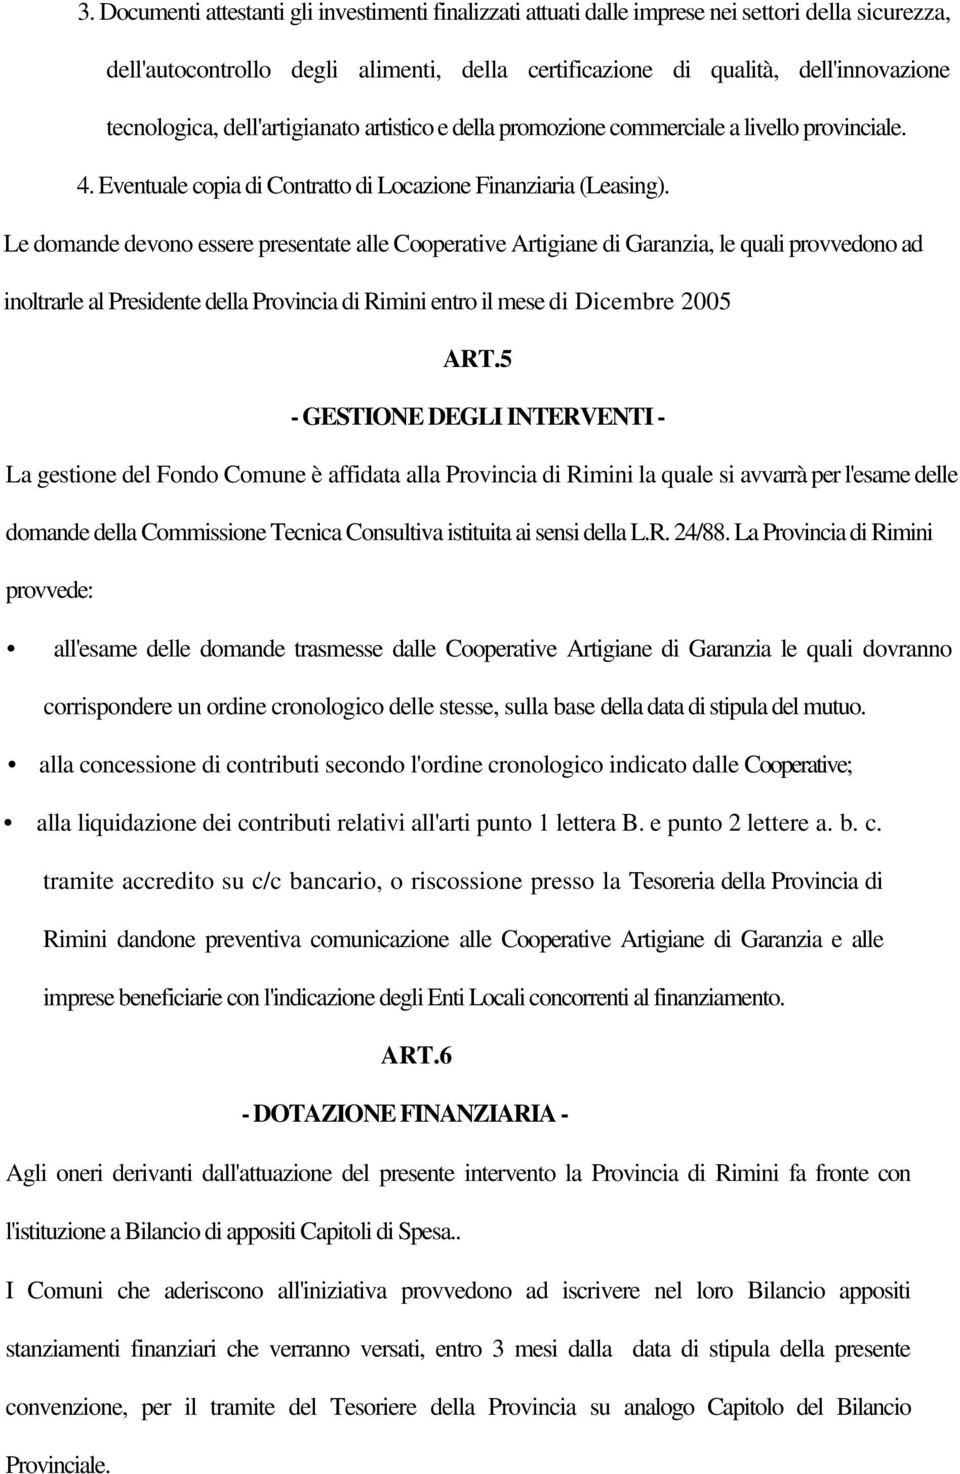 Le domande devono essere presentate alle Cooperative Artigiane di Garanzia, le quali provvedono ad inoltrarle al Presidente della Provincia di Rimini entro il mese di Dicembre 2005 ART.